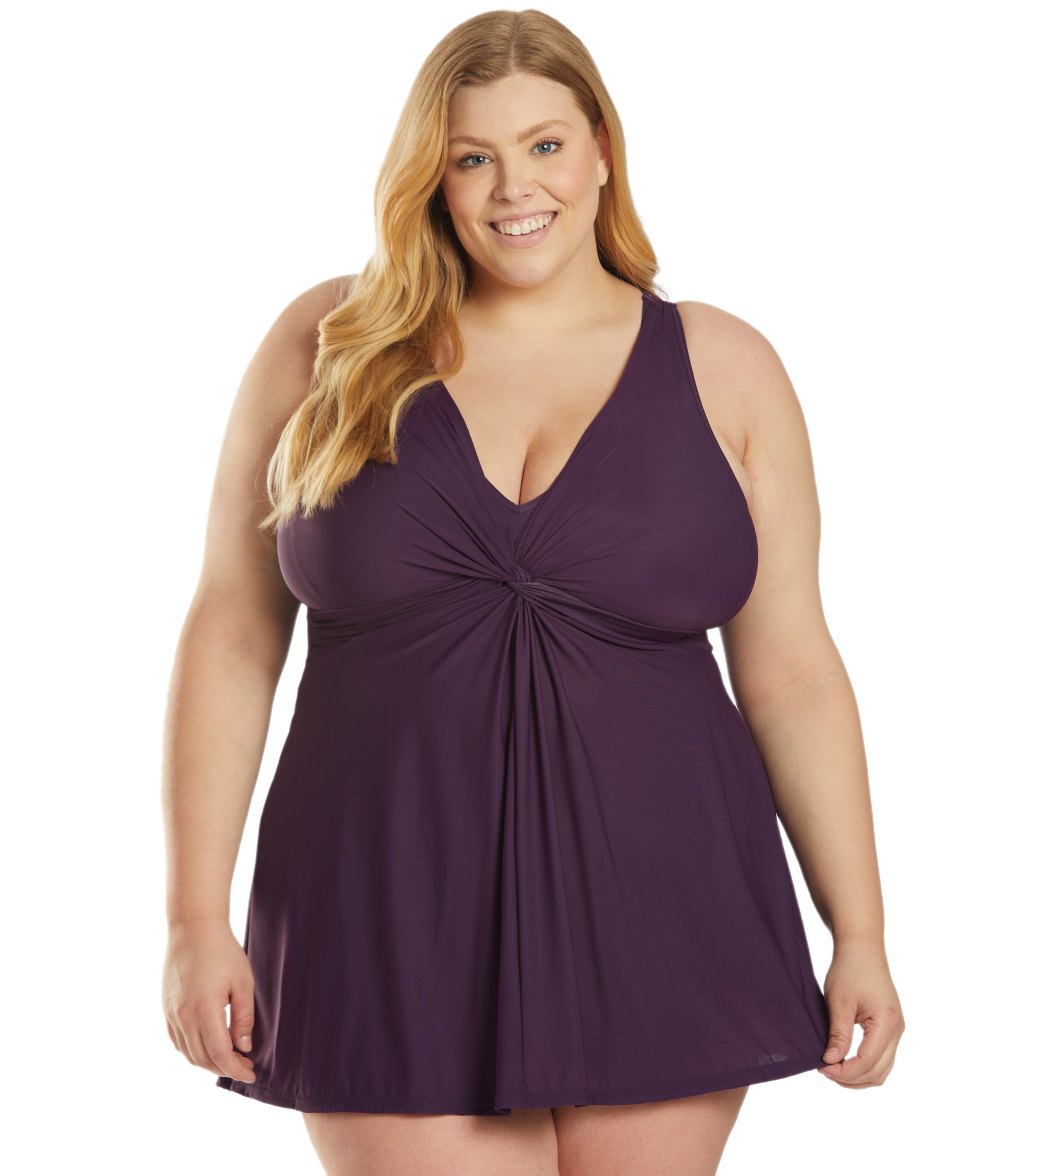 Miraclesuit Plus Size Solid Marais Swim Dress - Sangria 24W - Swimoutlet.com